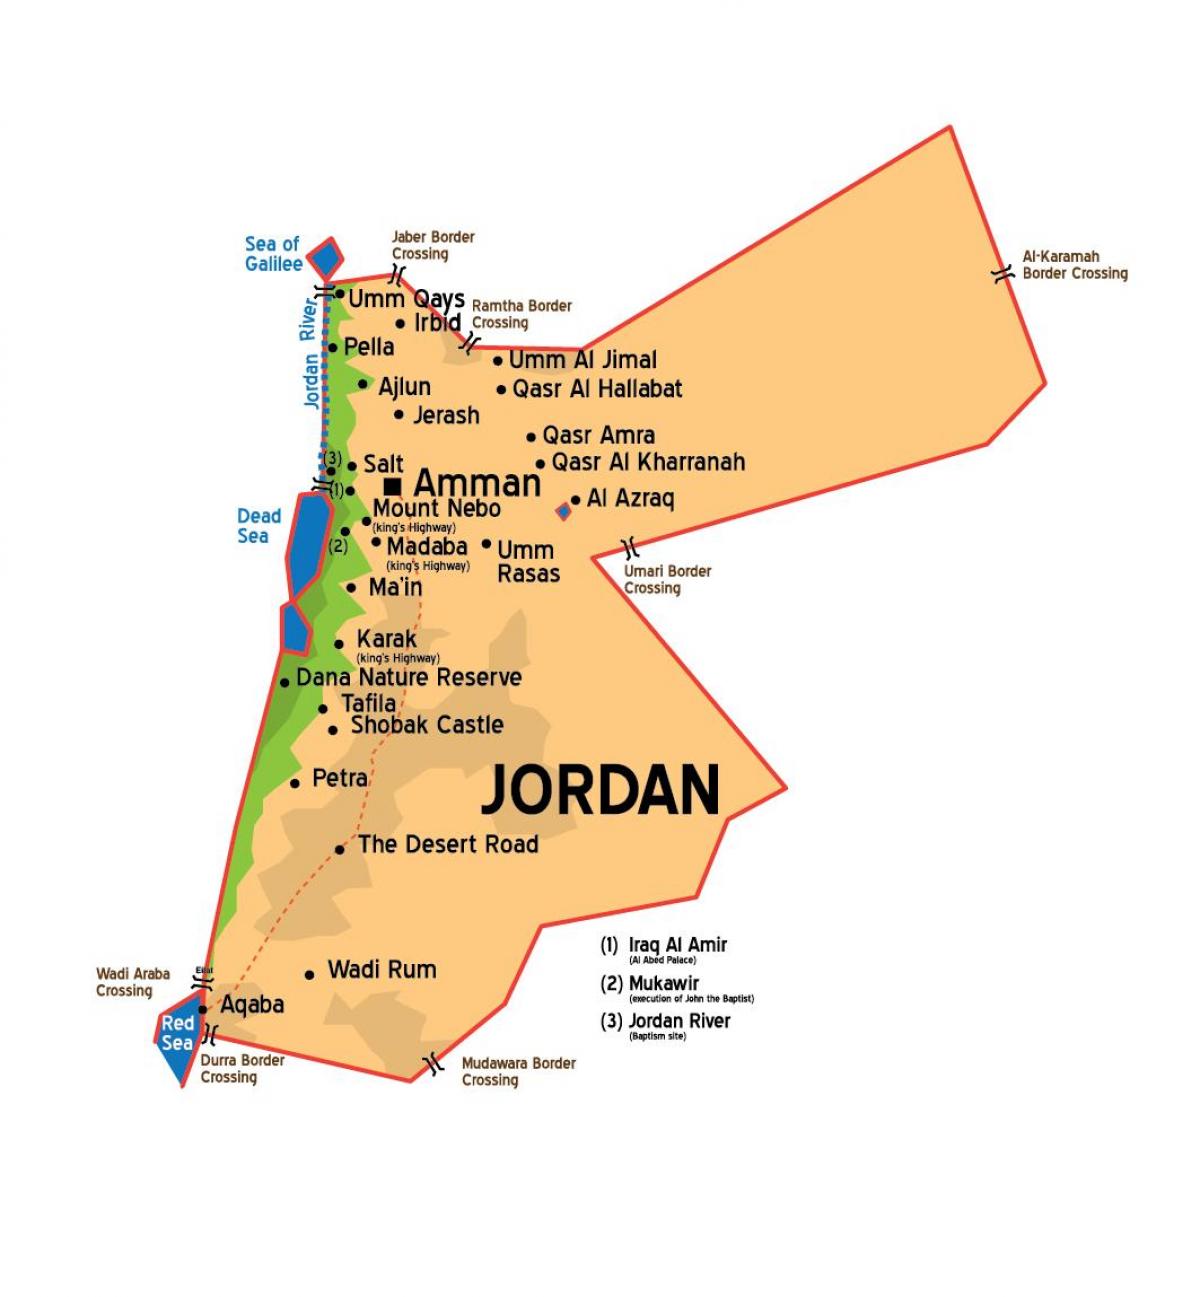 Jordan orașe hartă